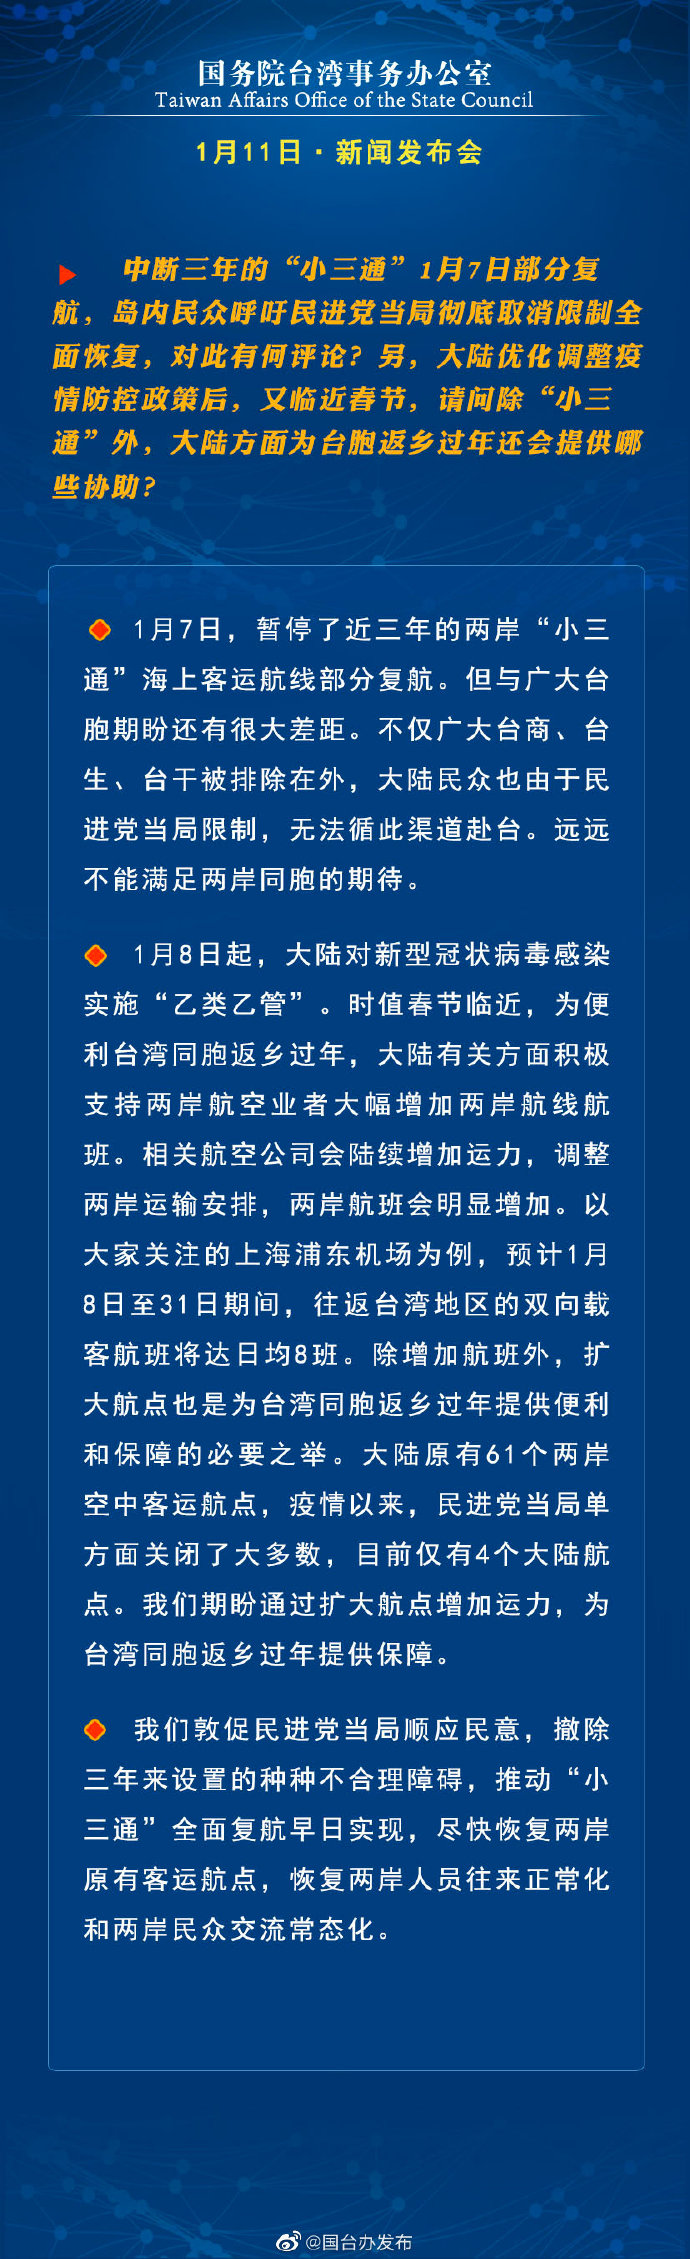 国务院台湾事务办公室1月11日·新闻发布会